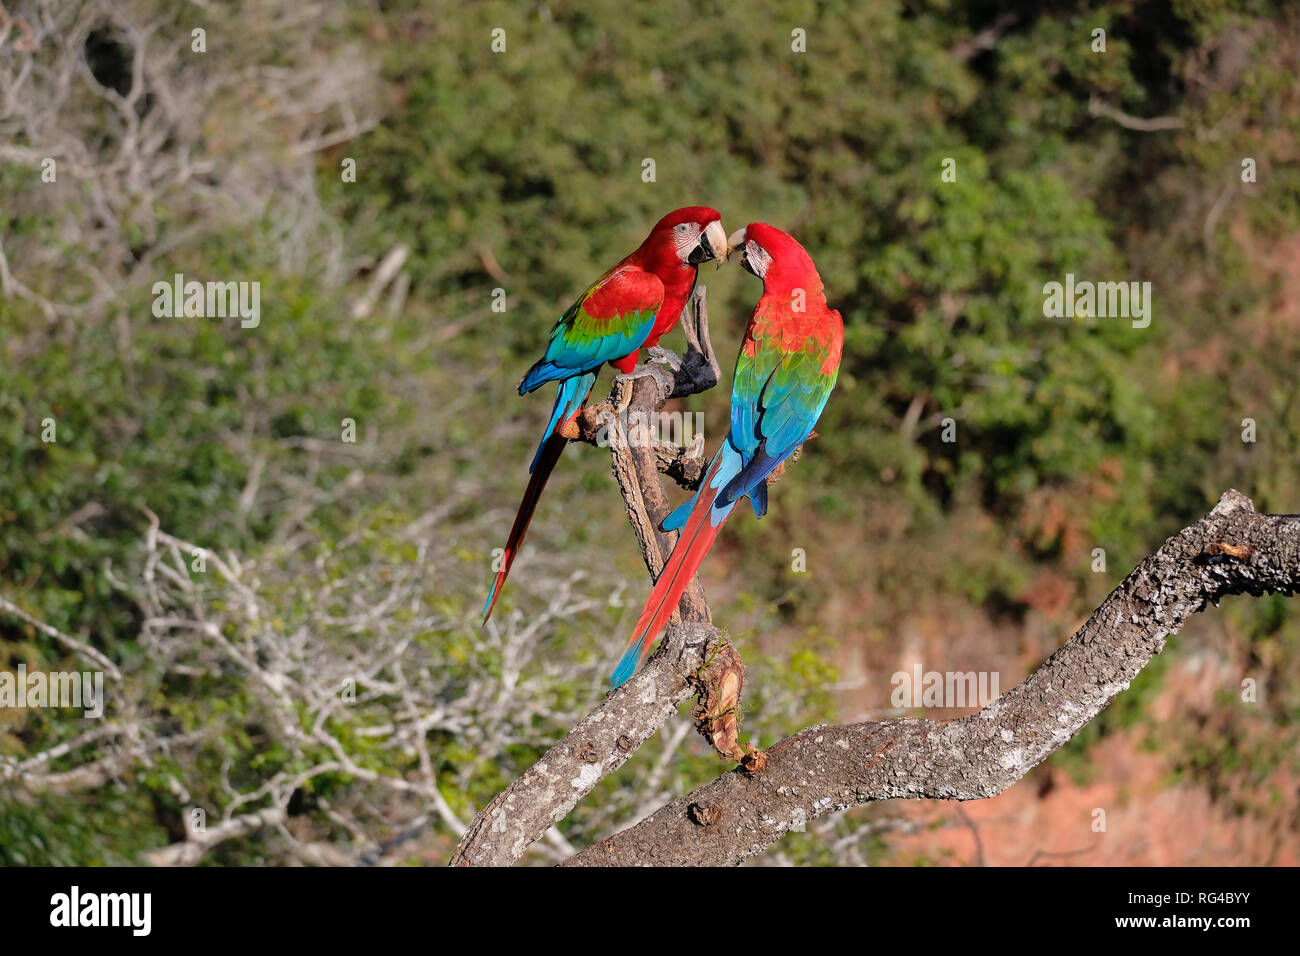 Red And Green Macaws, Ara Chloropterus, Buraco Das Araras, near Bonito, Pantanal, Brazil Stock Photo